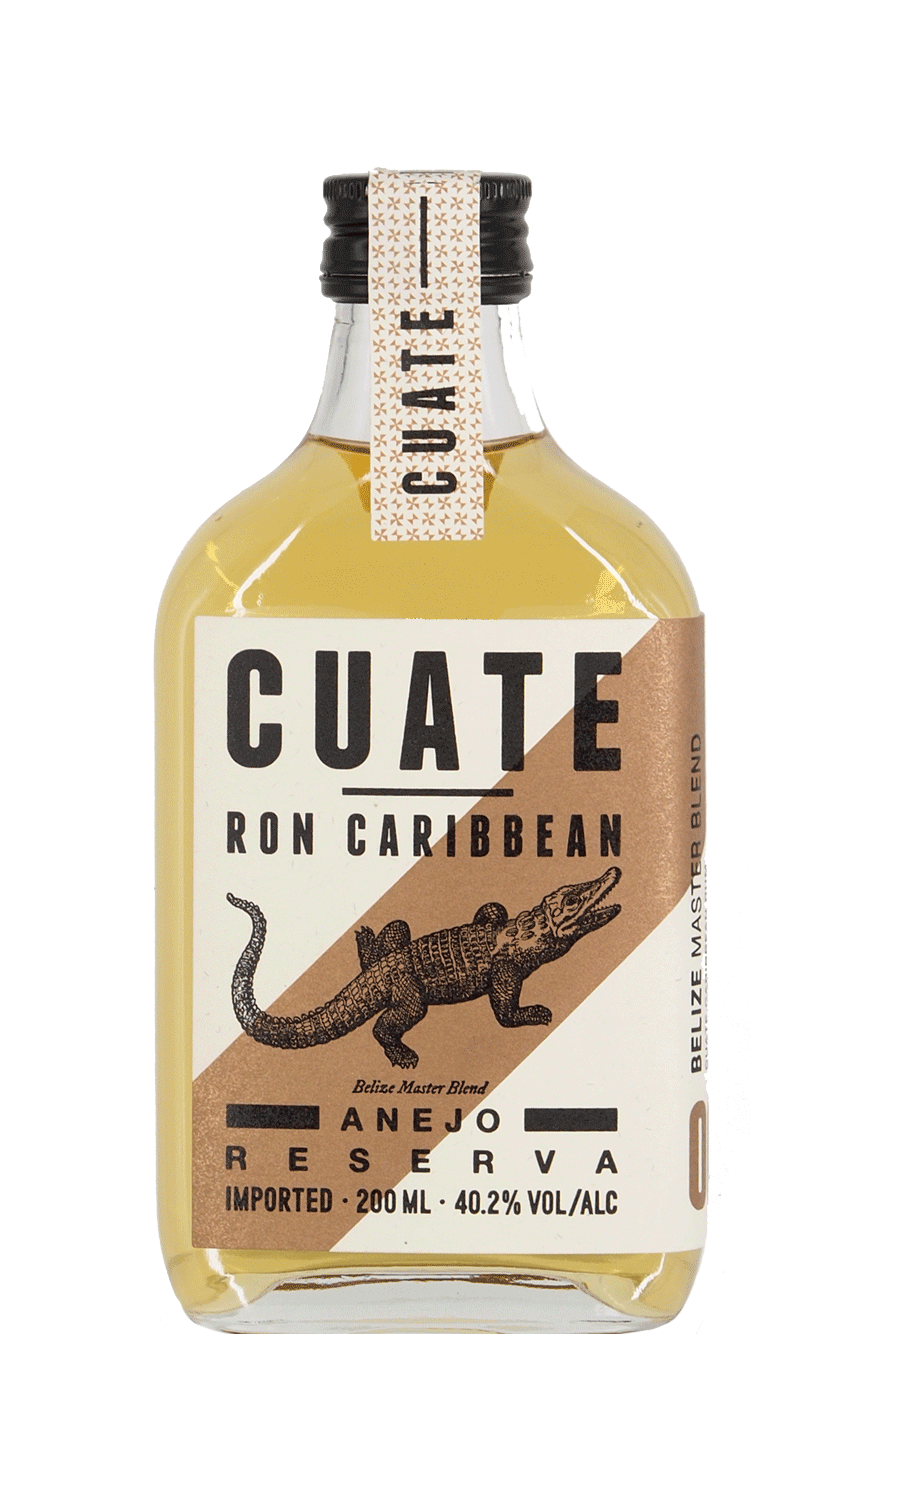 Cuate Rum 06 Belize Master Blend 0,2 L